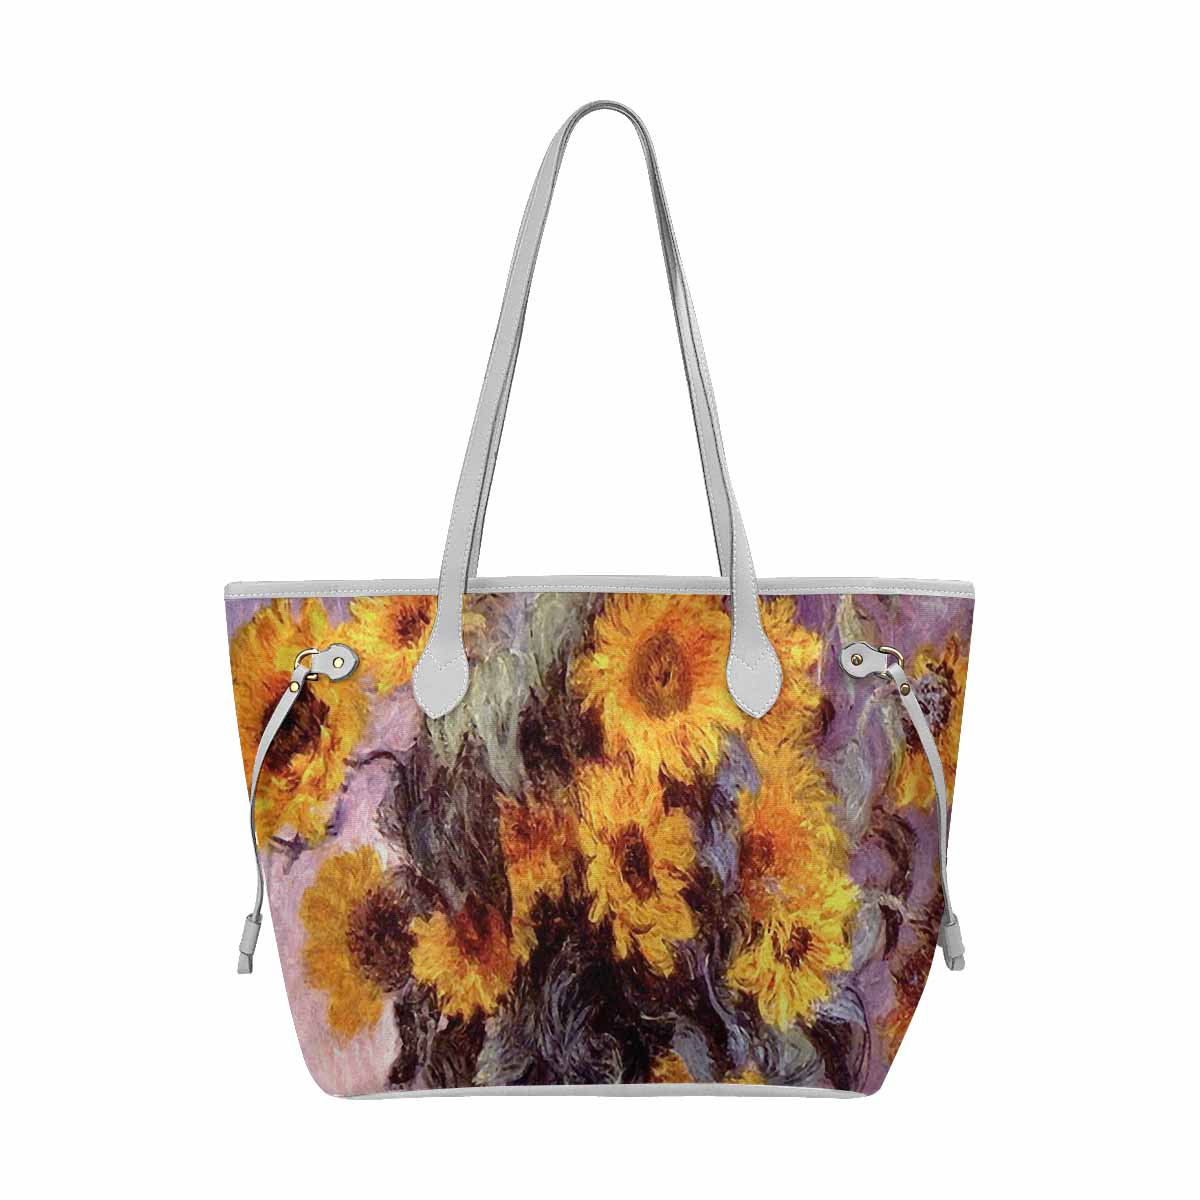 Vintage floral handbag, classic handbag, Mod 1661, Design 49 TEST